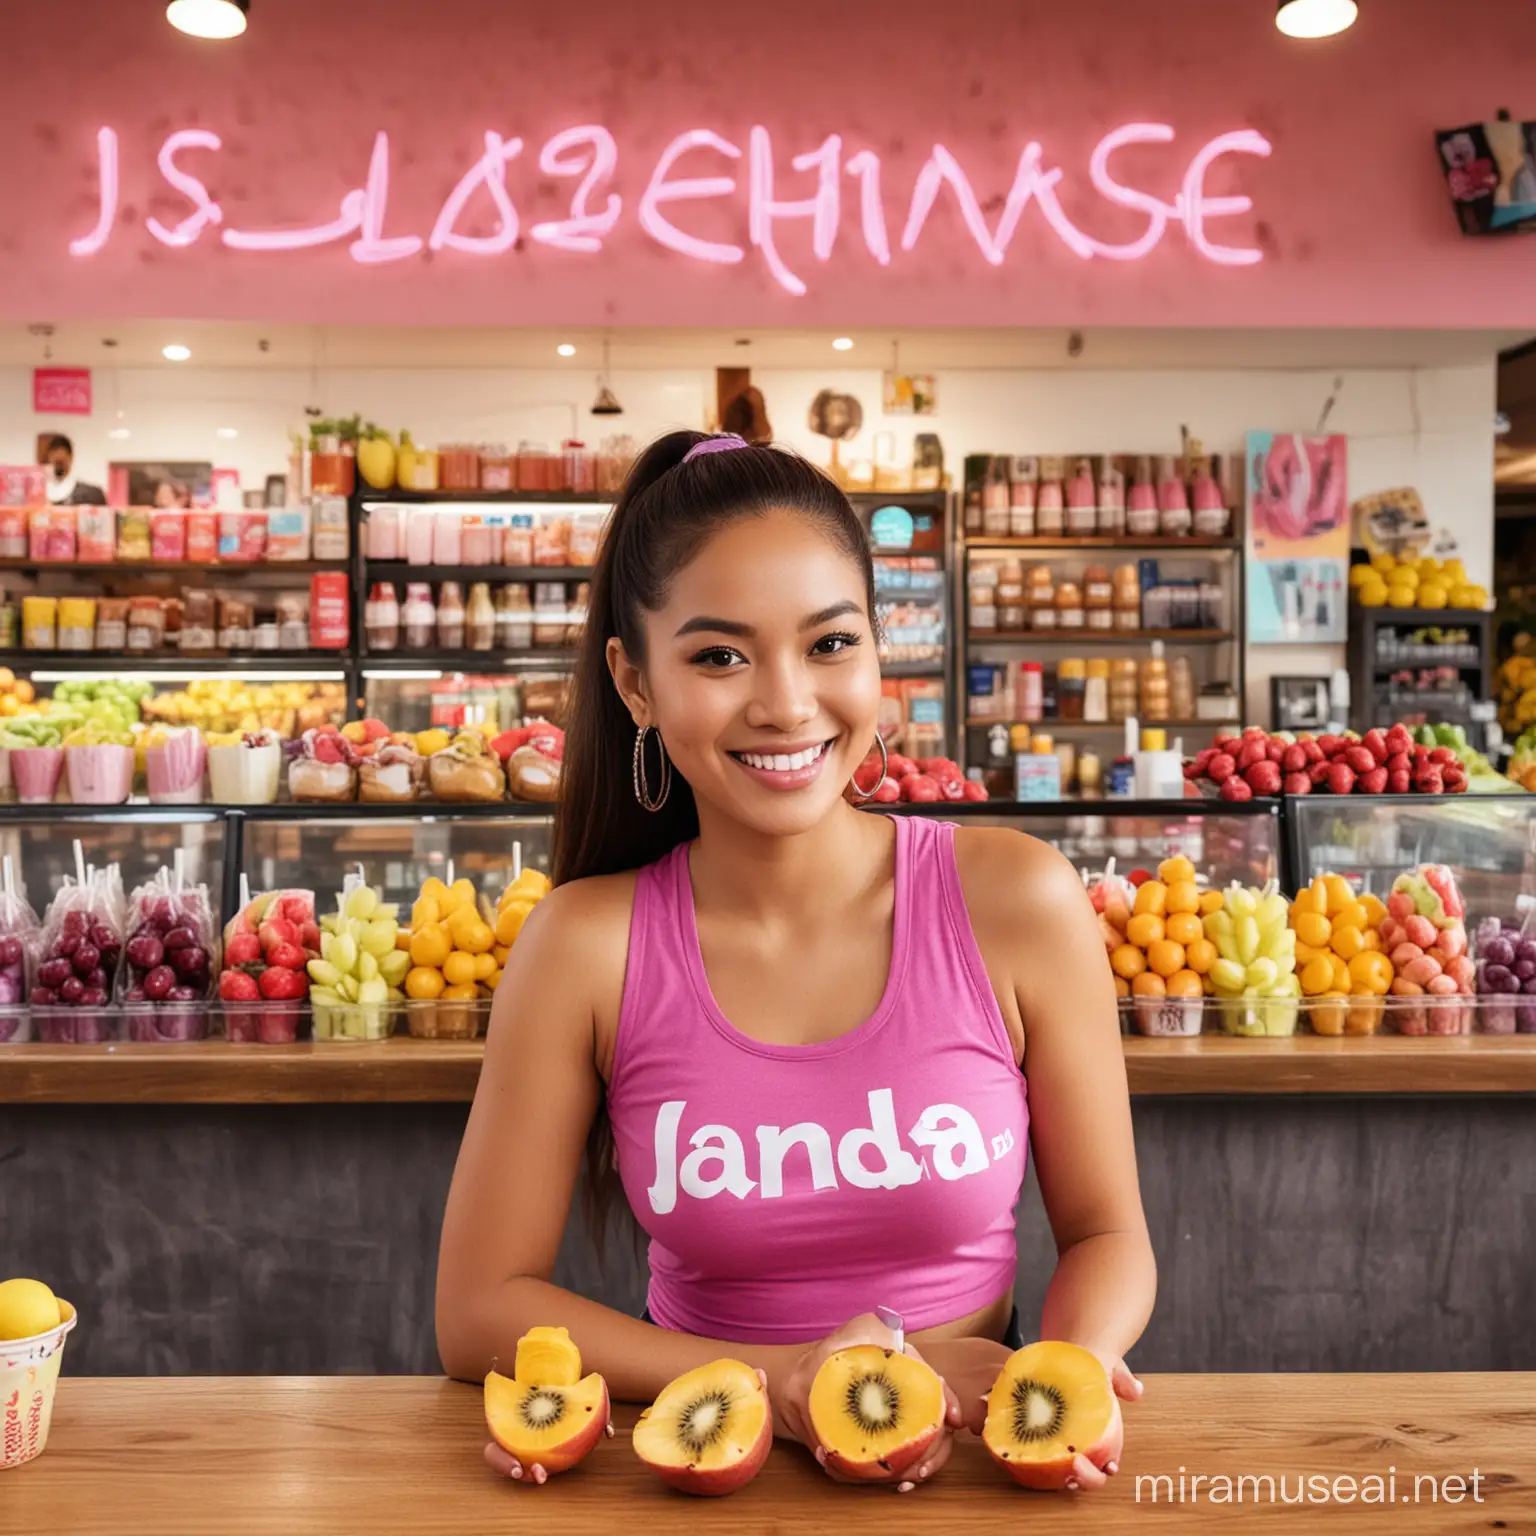 Smiling Filipino Woman in Janda Tank Top at Fruit Shake Shop